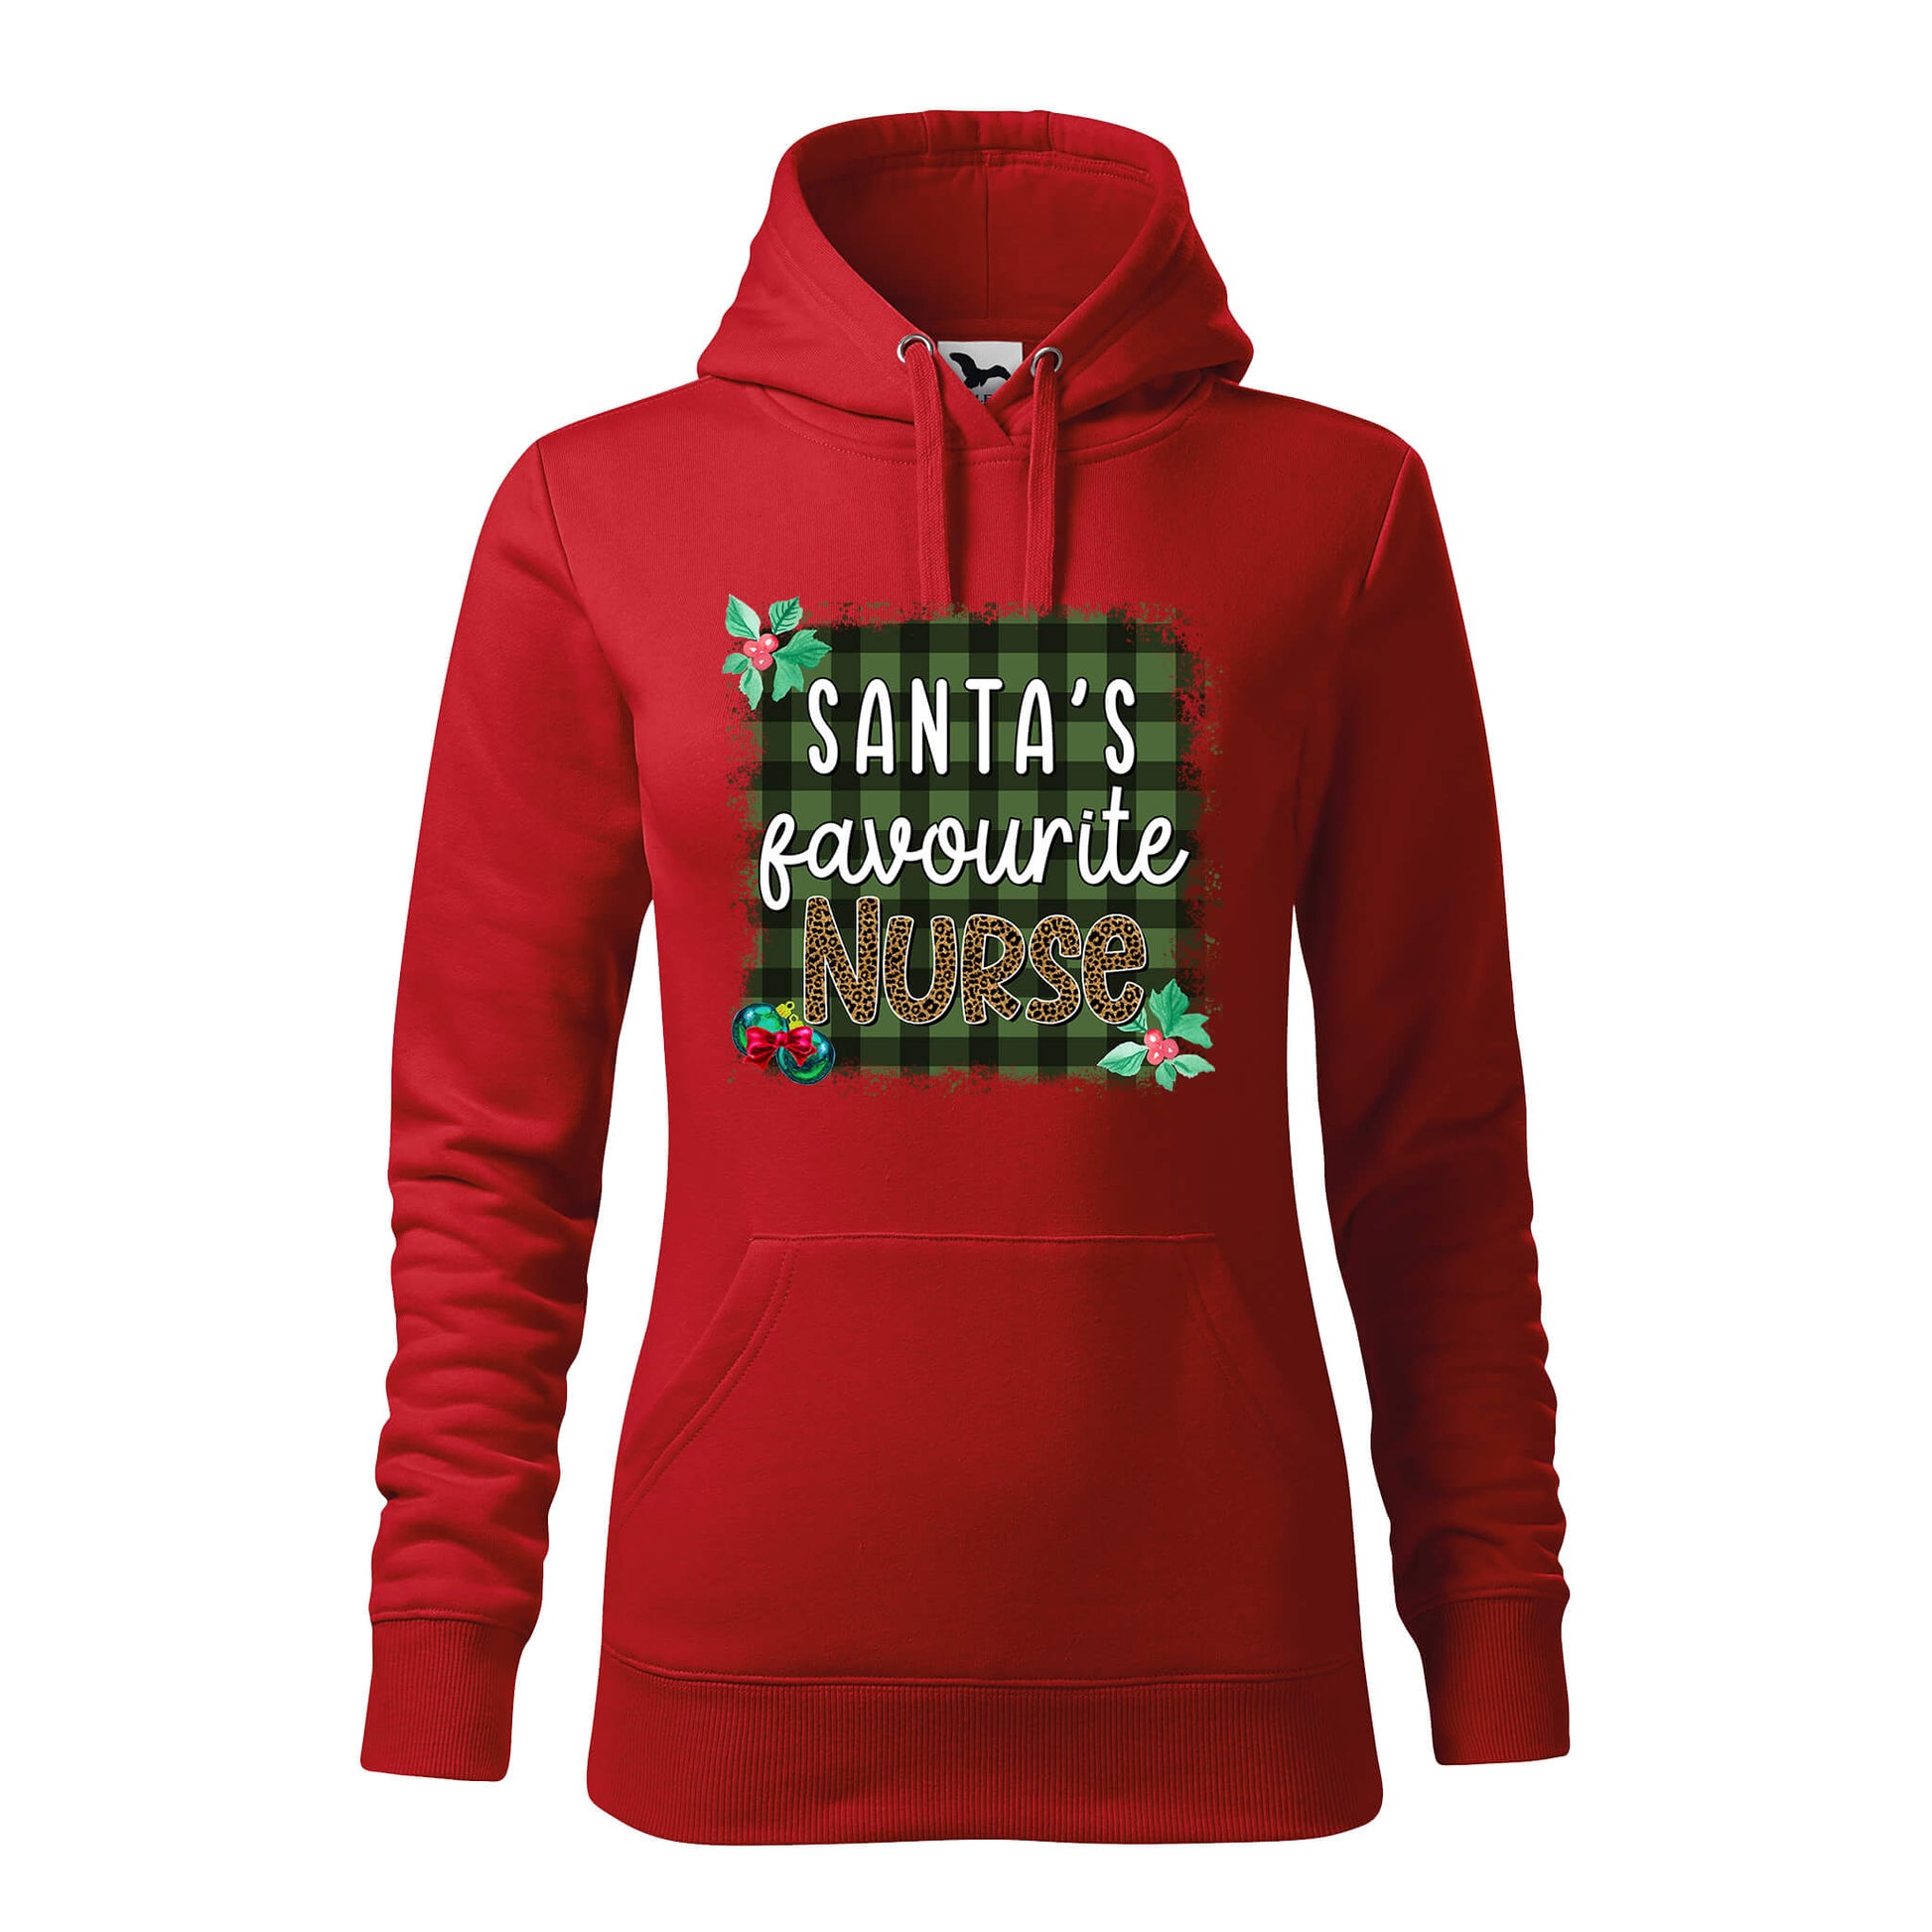 Santas favourite nurse2 hoodie - rvdesignprint